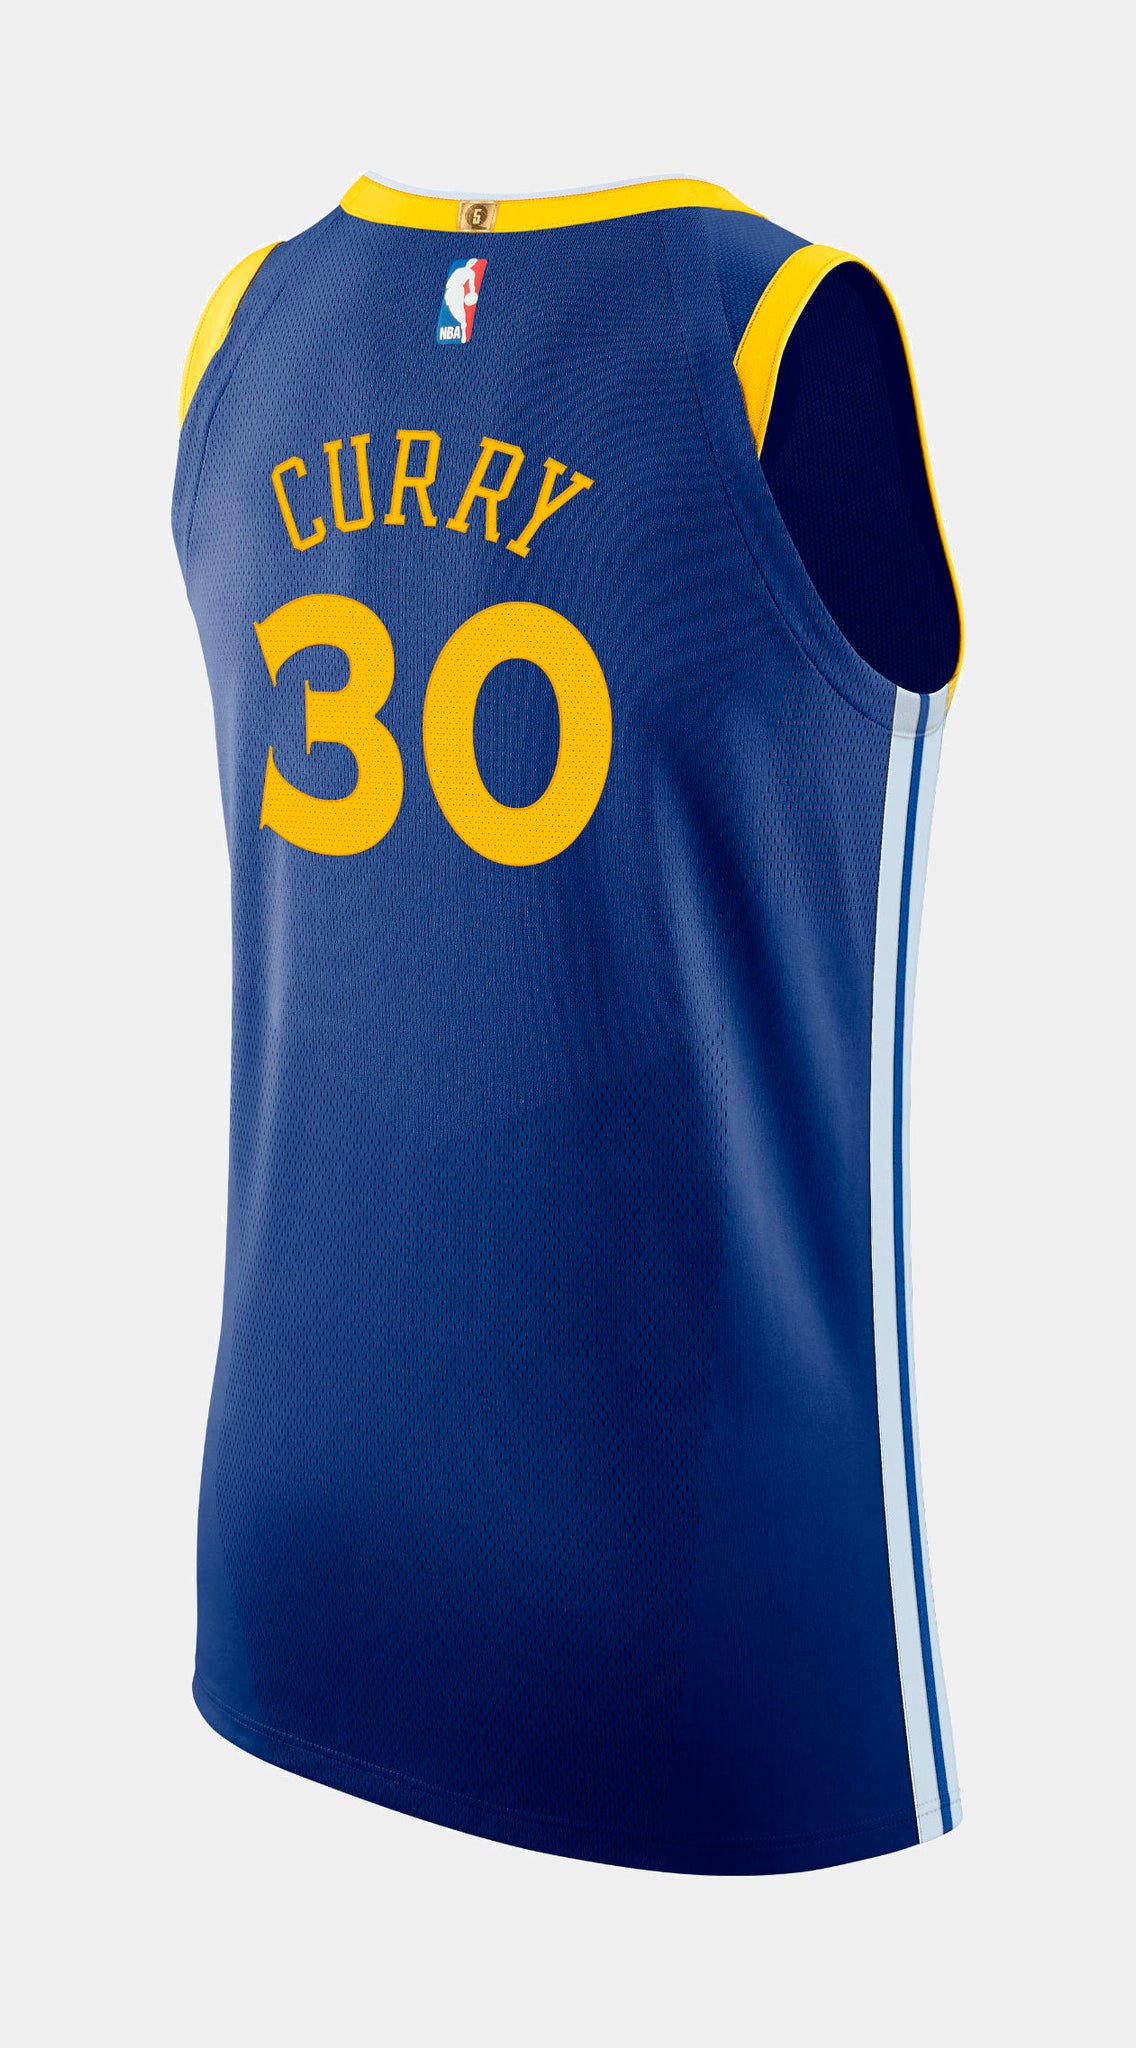 Nike Stephen Curry Golden State Warriors T-Shirt, Blue, XL